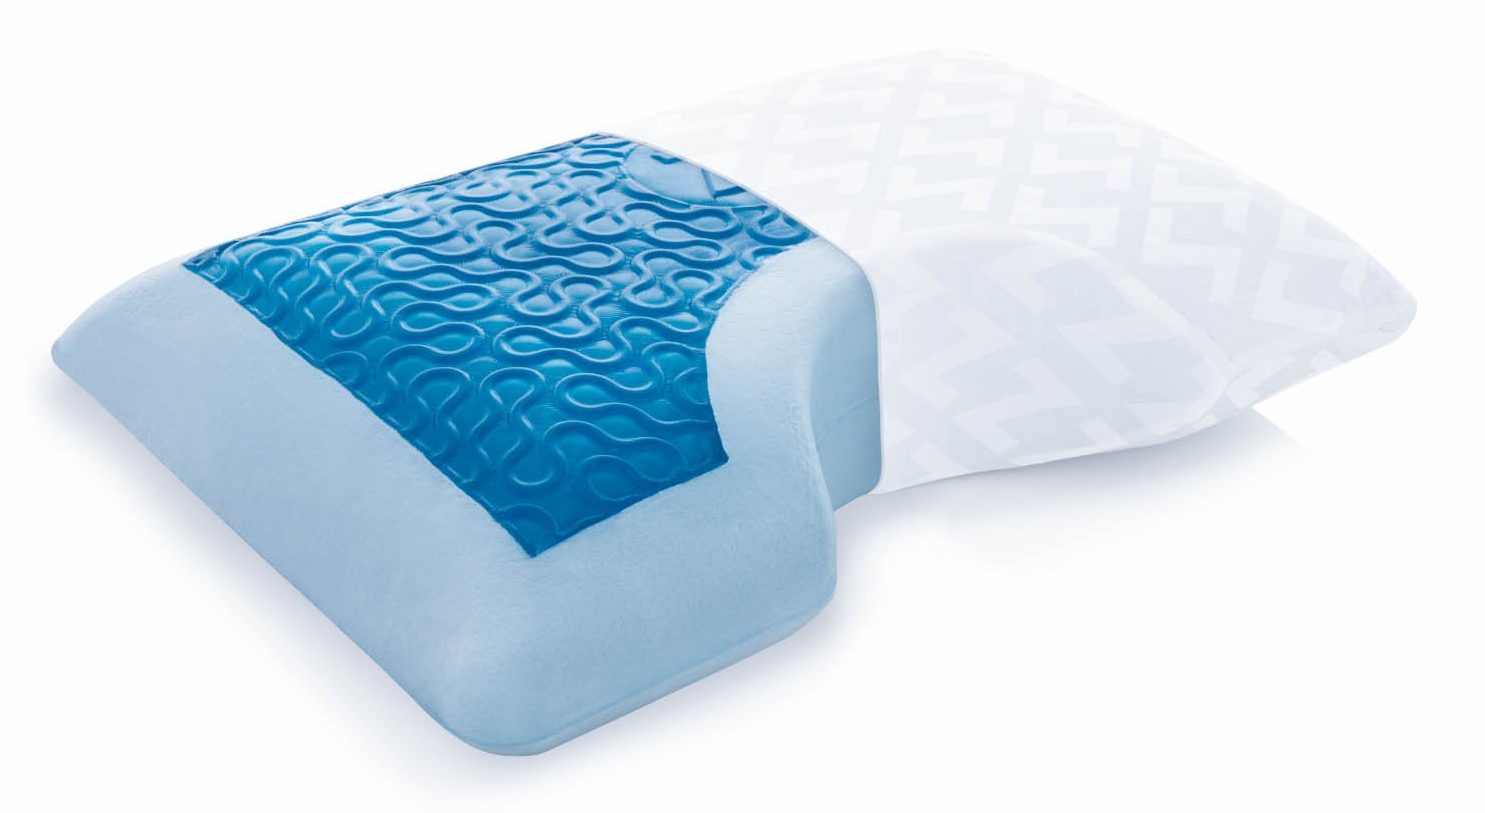 Memory foam side sleeper pillow for chronic pain.